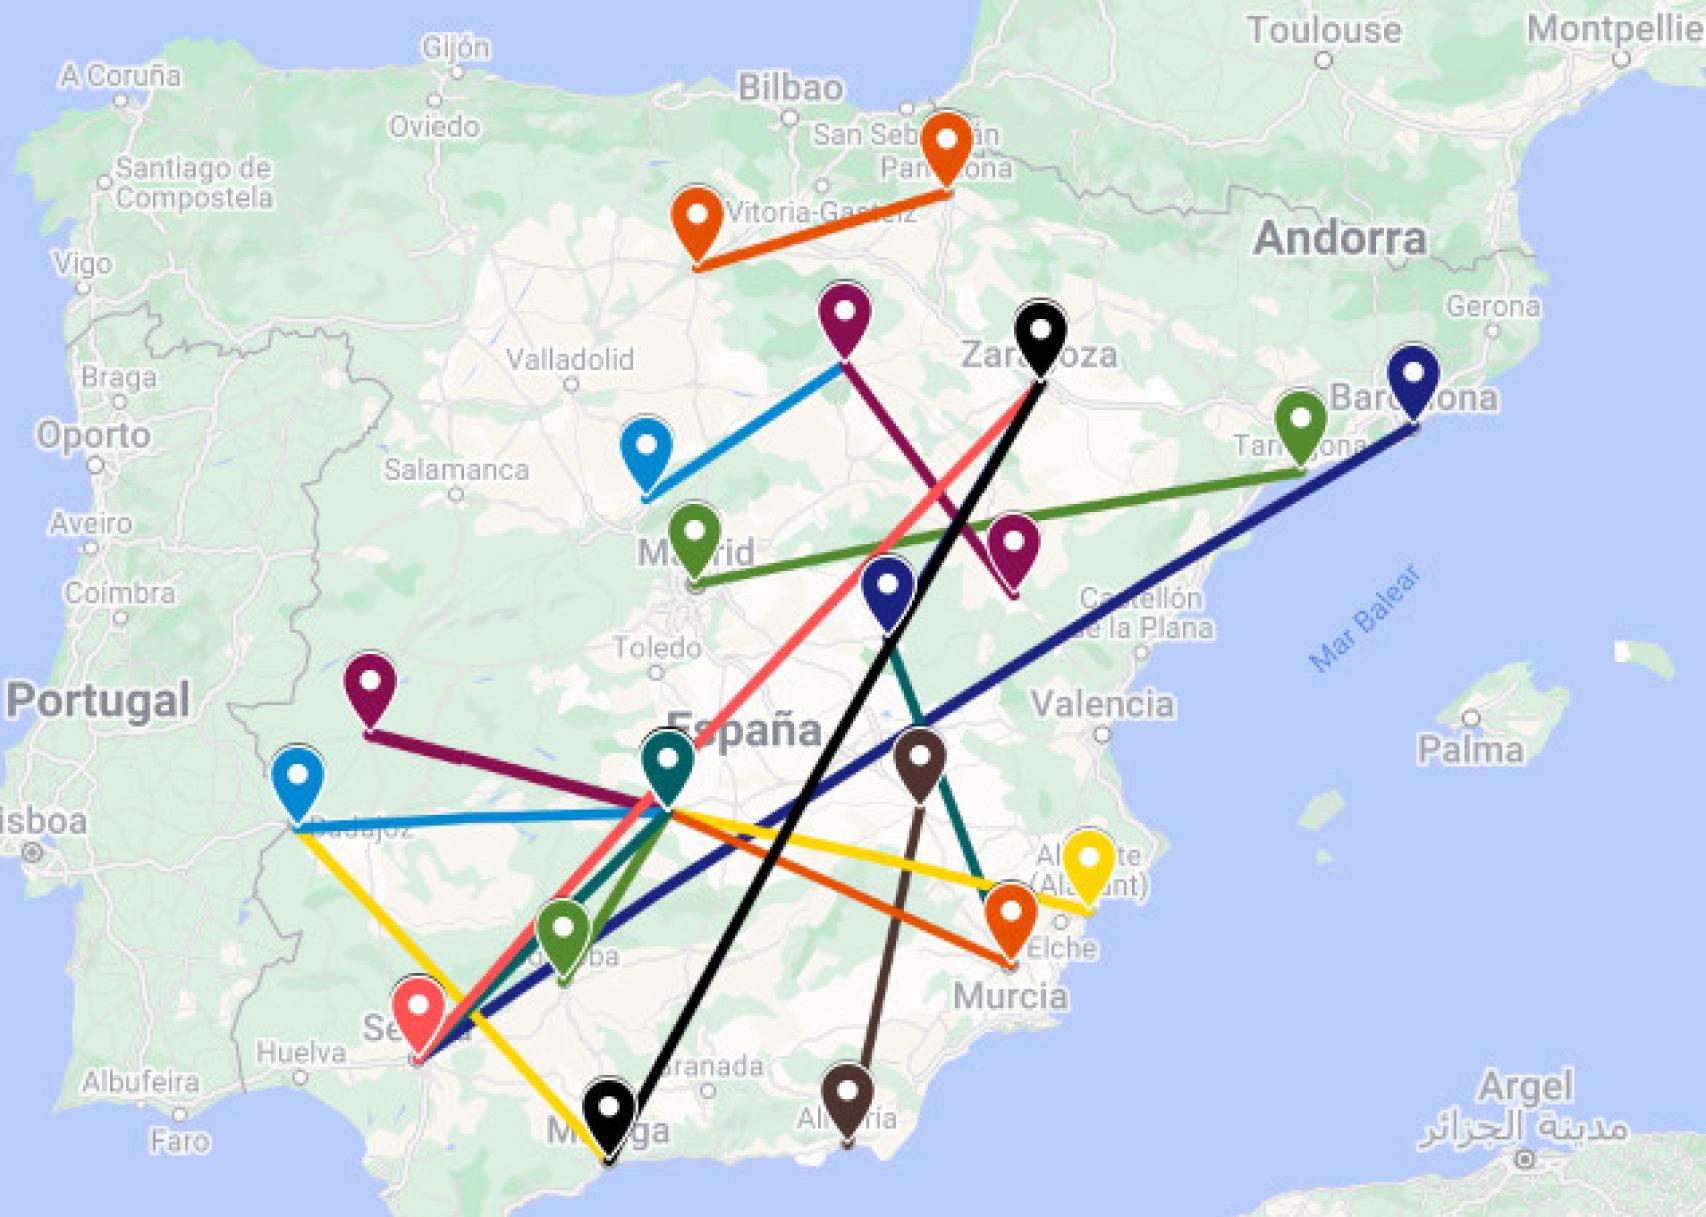 Mapa con las conexiones entre capitales de provincia españoles que carecen de ruta directa en autobús.